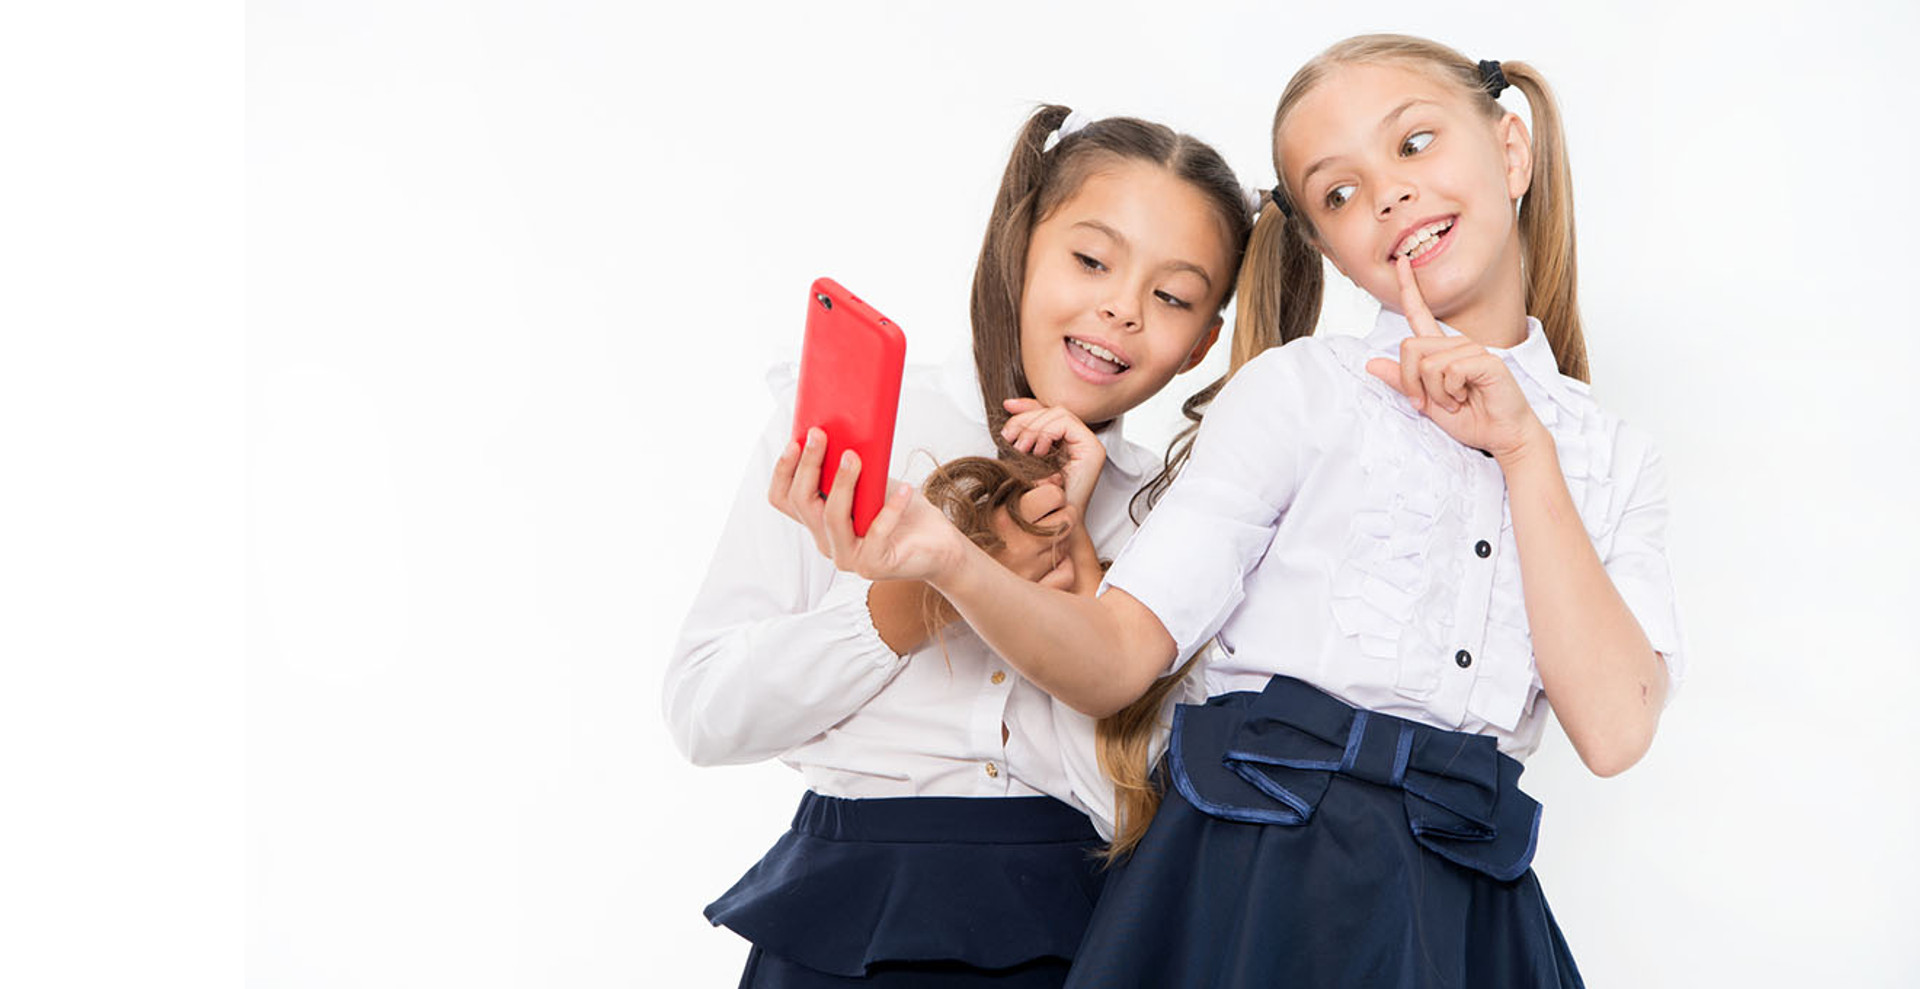 Мобільні телефони у школі: заборонити, обмежити, дозволити?